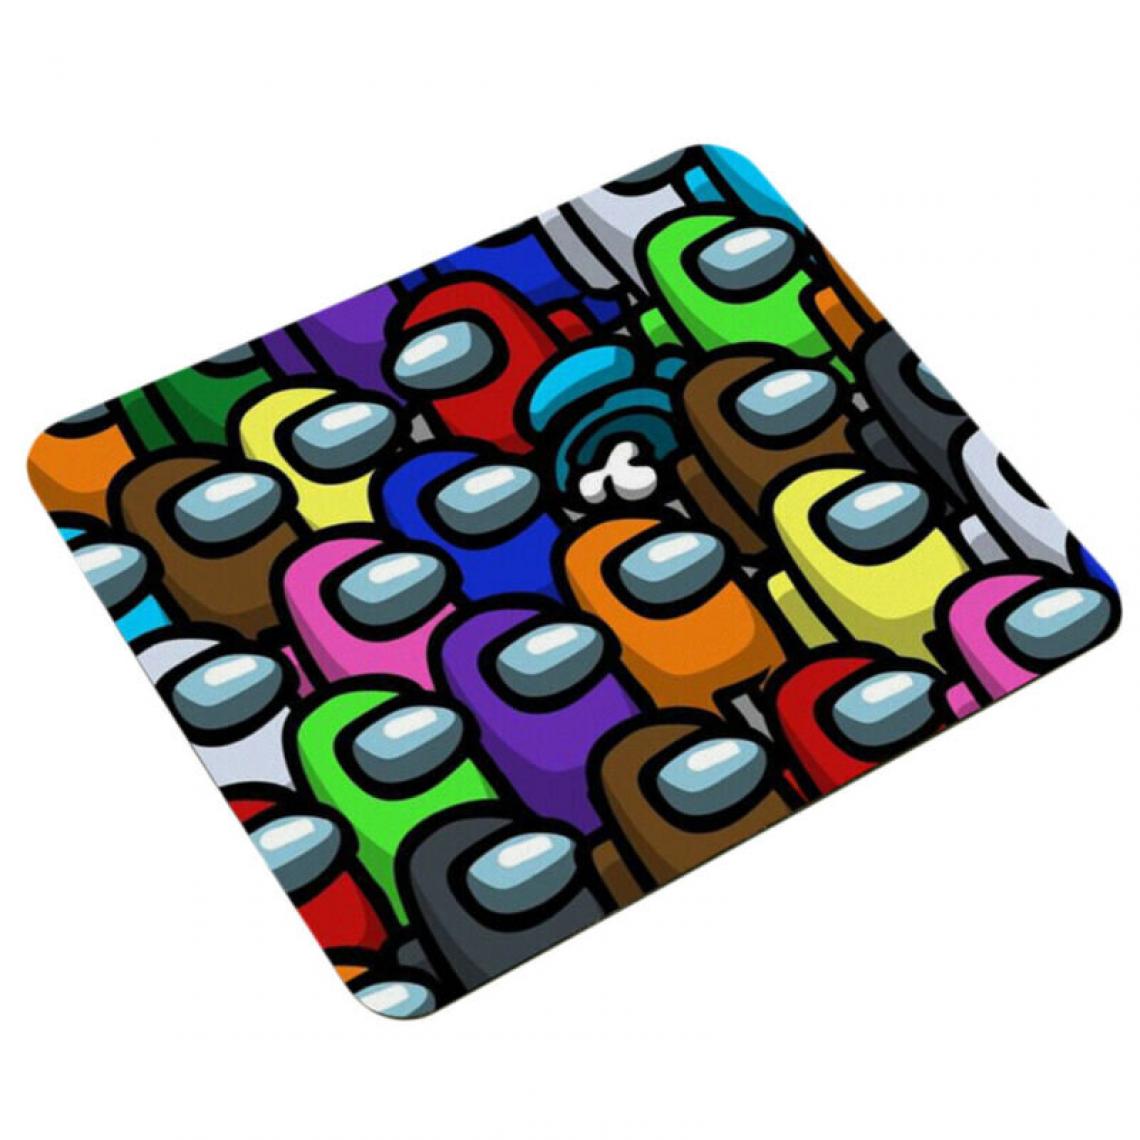 Universal - Parmi nous tapis de souris de jeu tapis antidérapant pour PC portable cadeaux de bureau - Tapis de souris